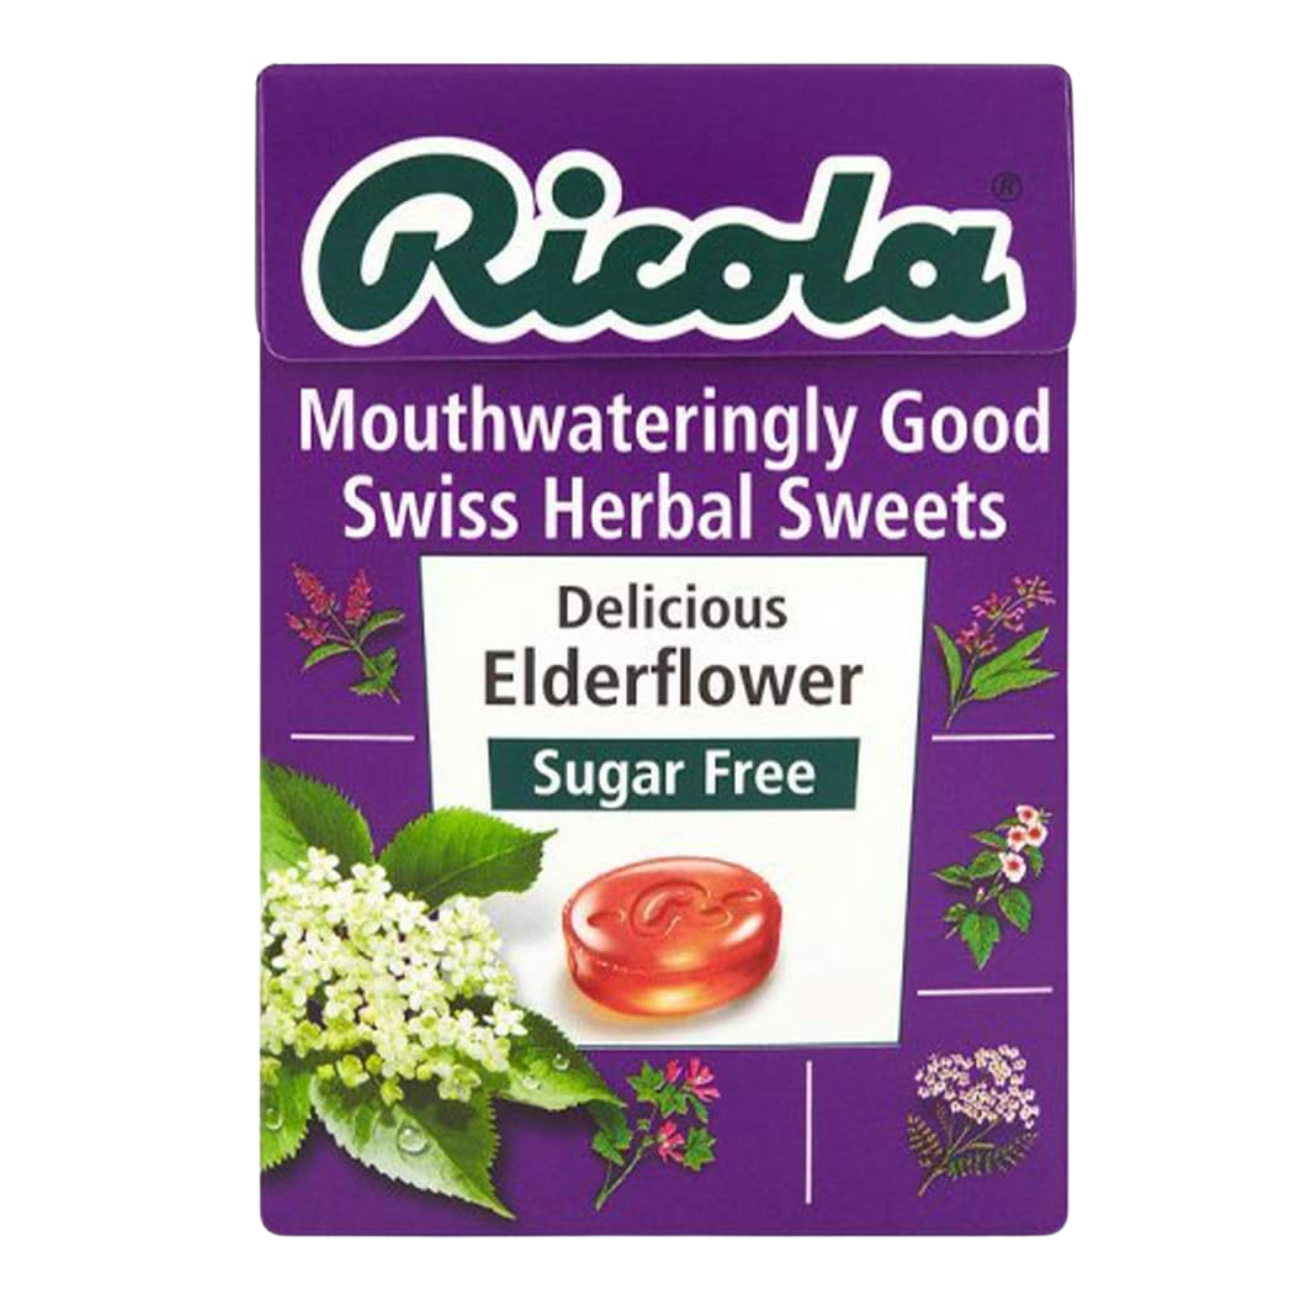 Elderflower Sugar Free with Stevia Swiss Herbal Sweets 45g